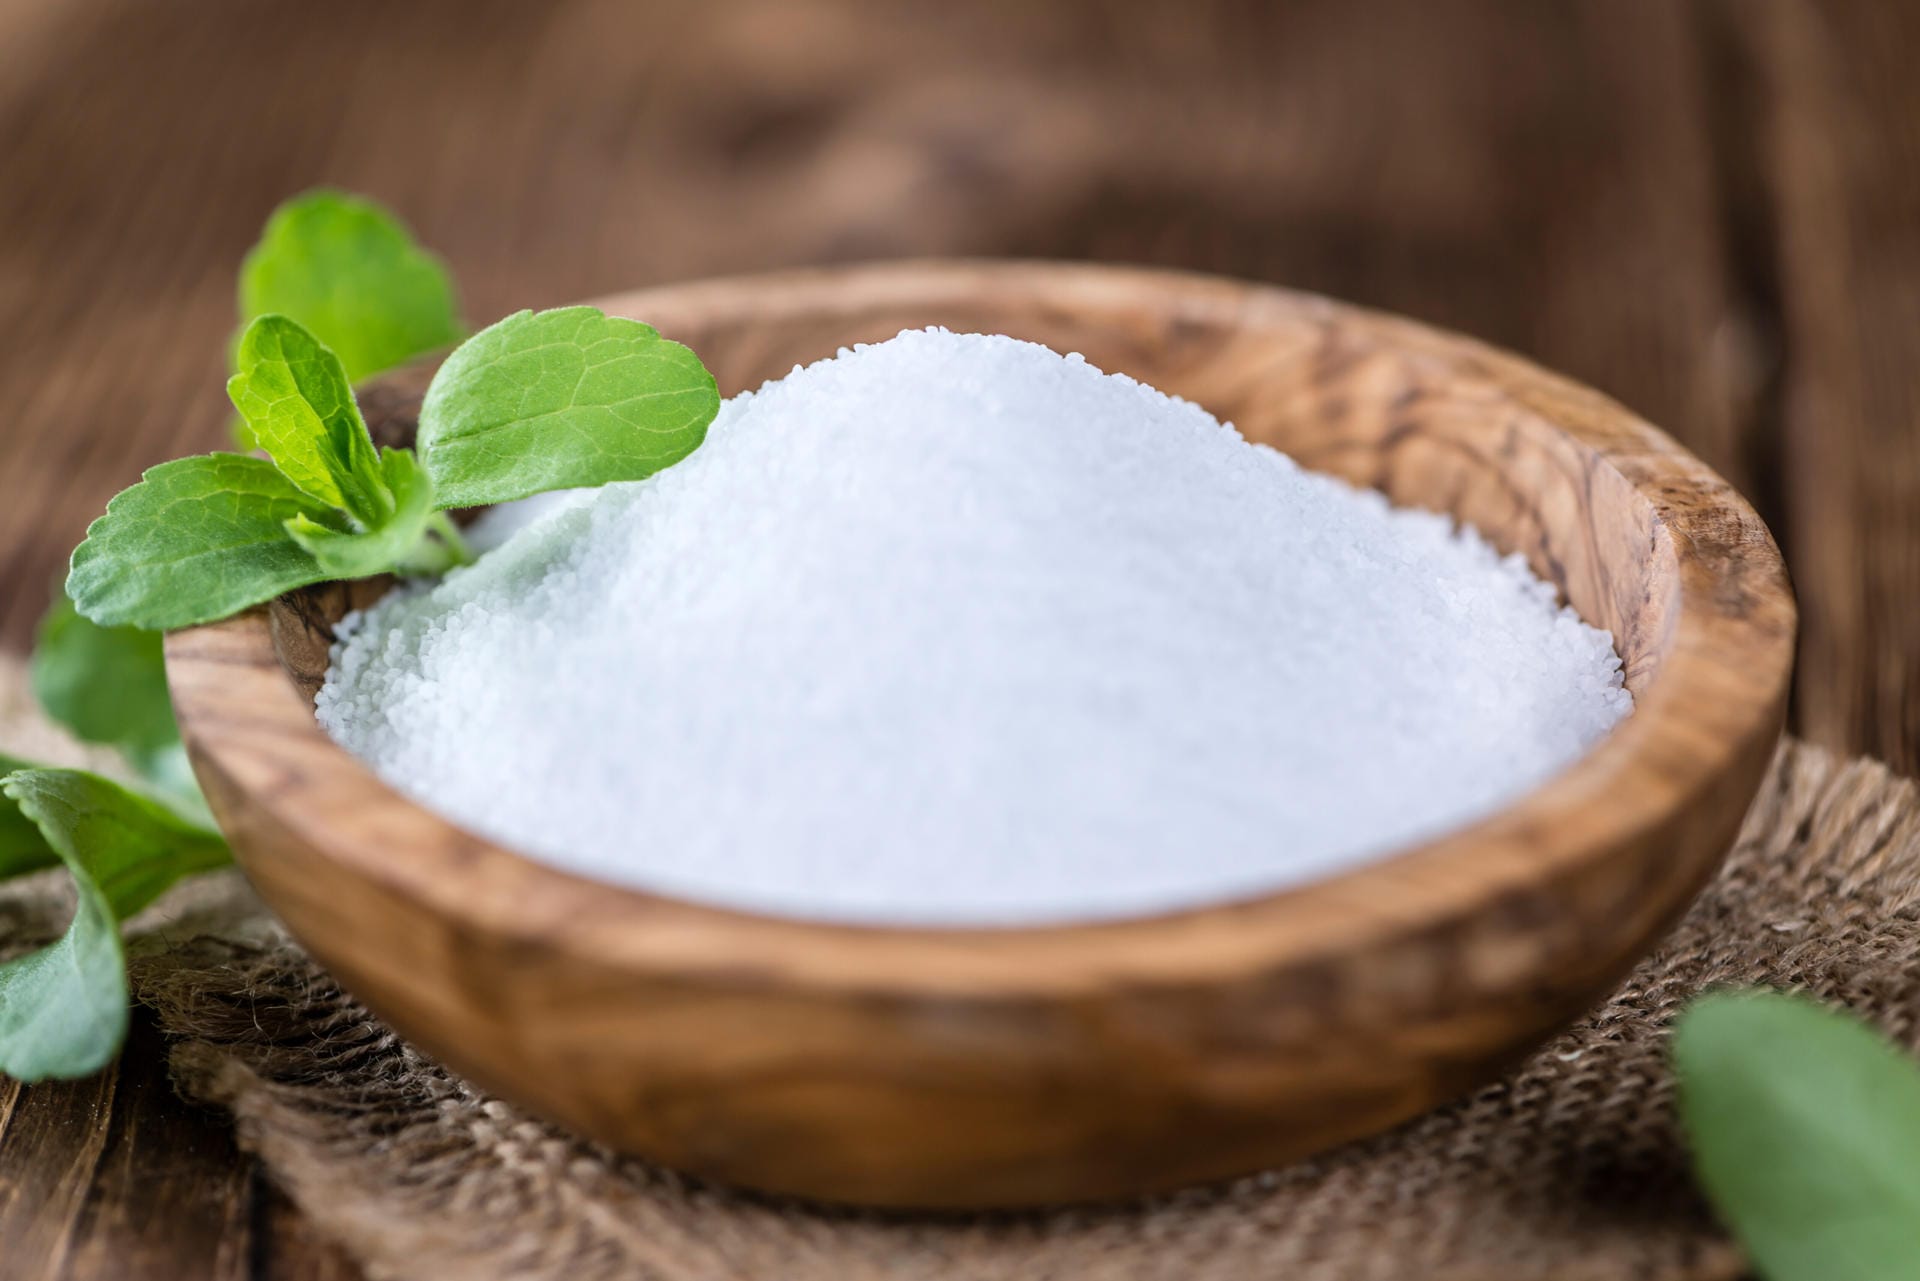 Stevia ist bis zu 300 Mal süßer als herkömmlicher Zucker und wird aus der Steviapflanze gewonnen. Der Süßstoff befindet sich häufig in Milchprodukten, alkoholfreien Erfrischungsgetränken und Konfitüren.